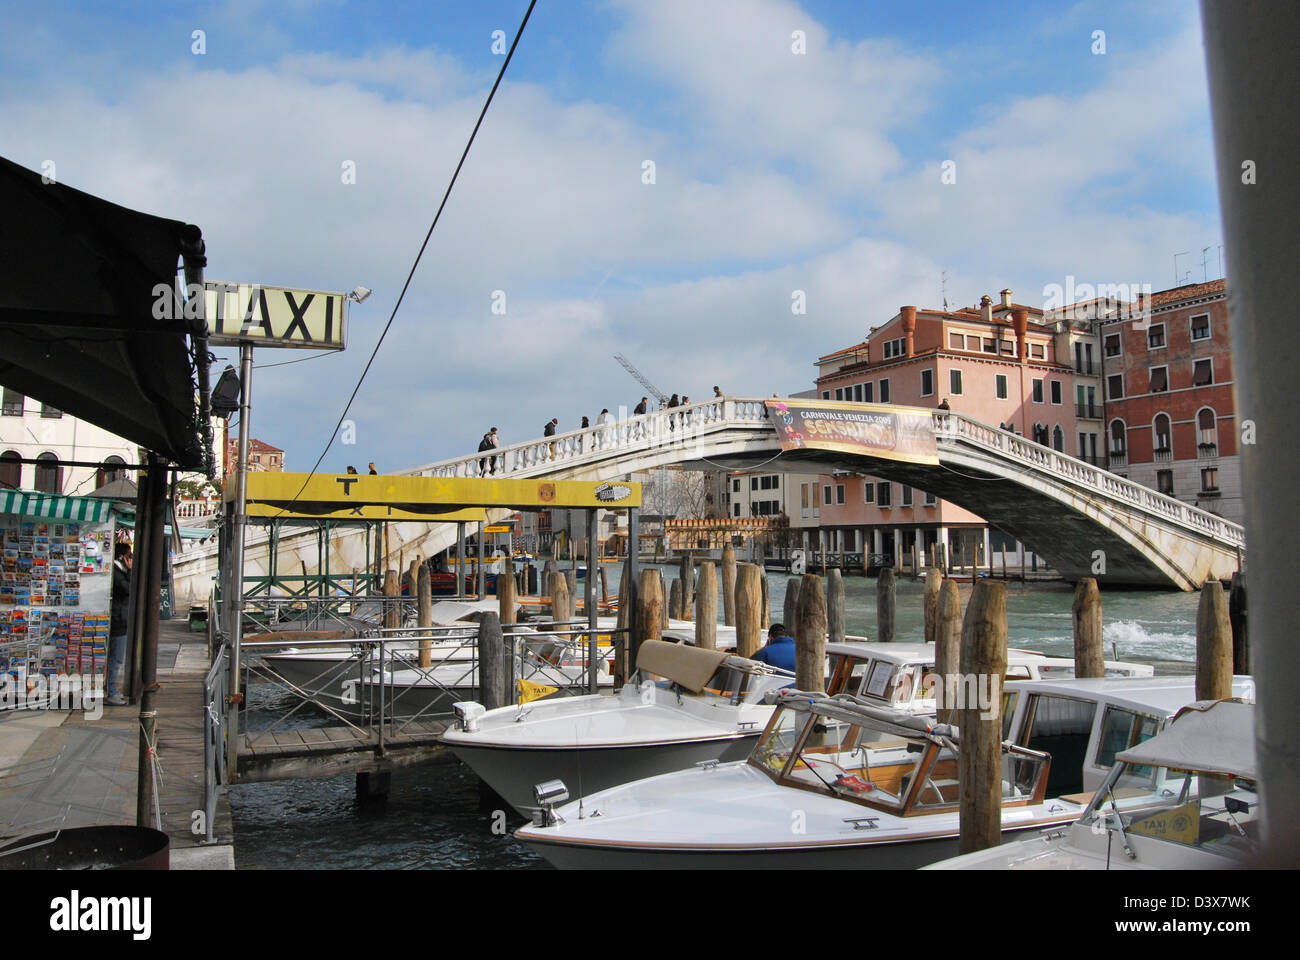 Les taxis de l'eau la ligne de Grand Canal de Venise Italie Banque D'Images